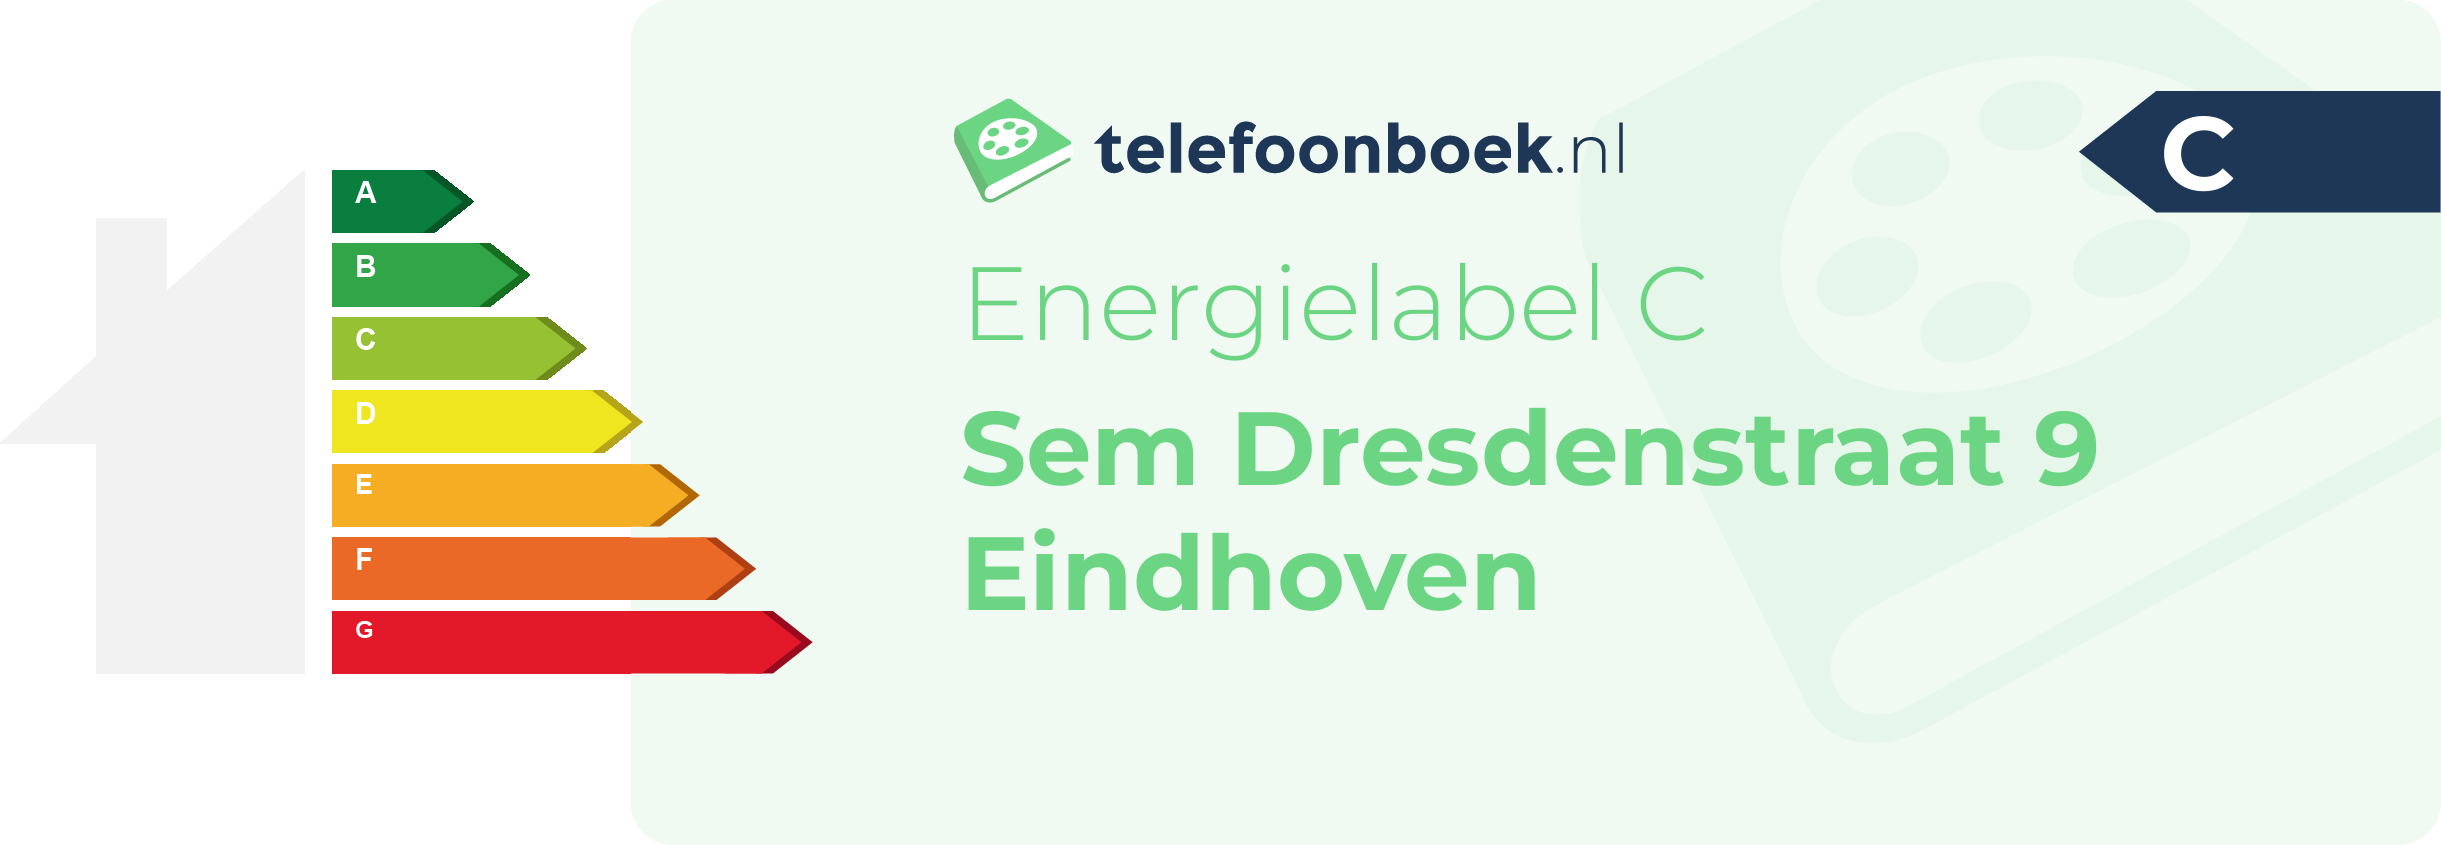 Energielabel Sem Dresdenstraat 9 Eindhoven